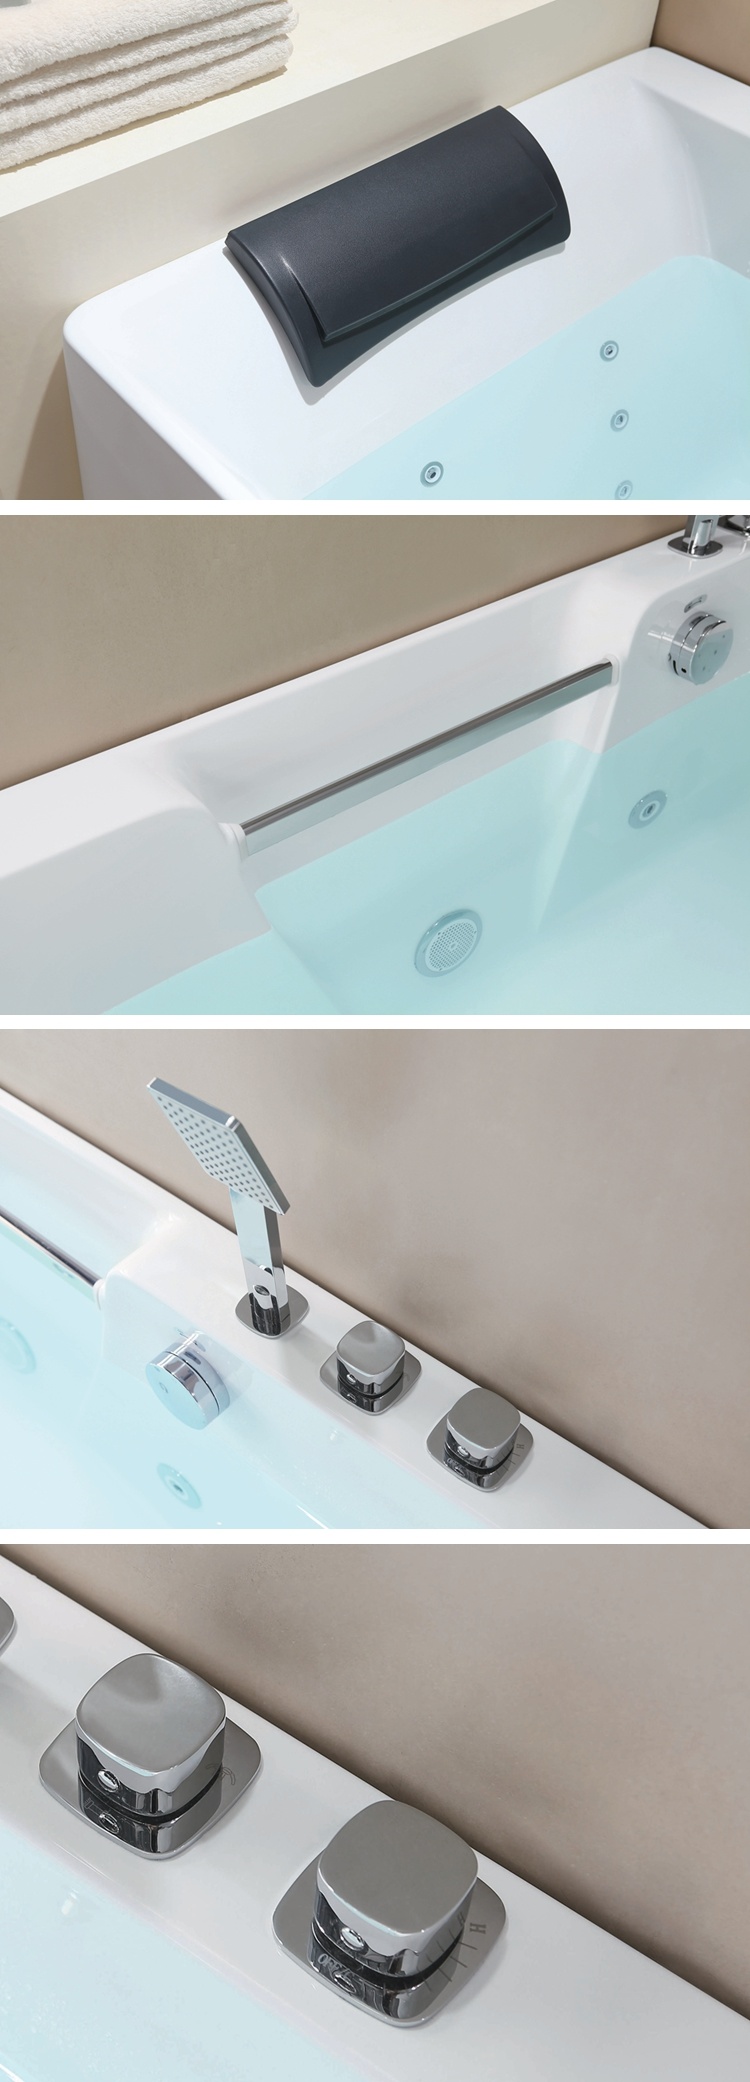 Decoration Colorful LED Light on Apron Adult Use Whirlpool Bathtub